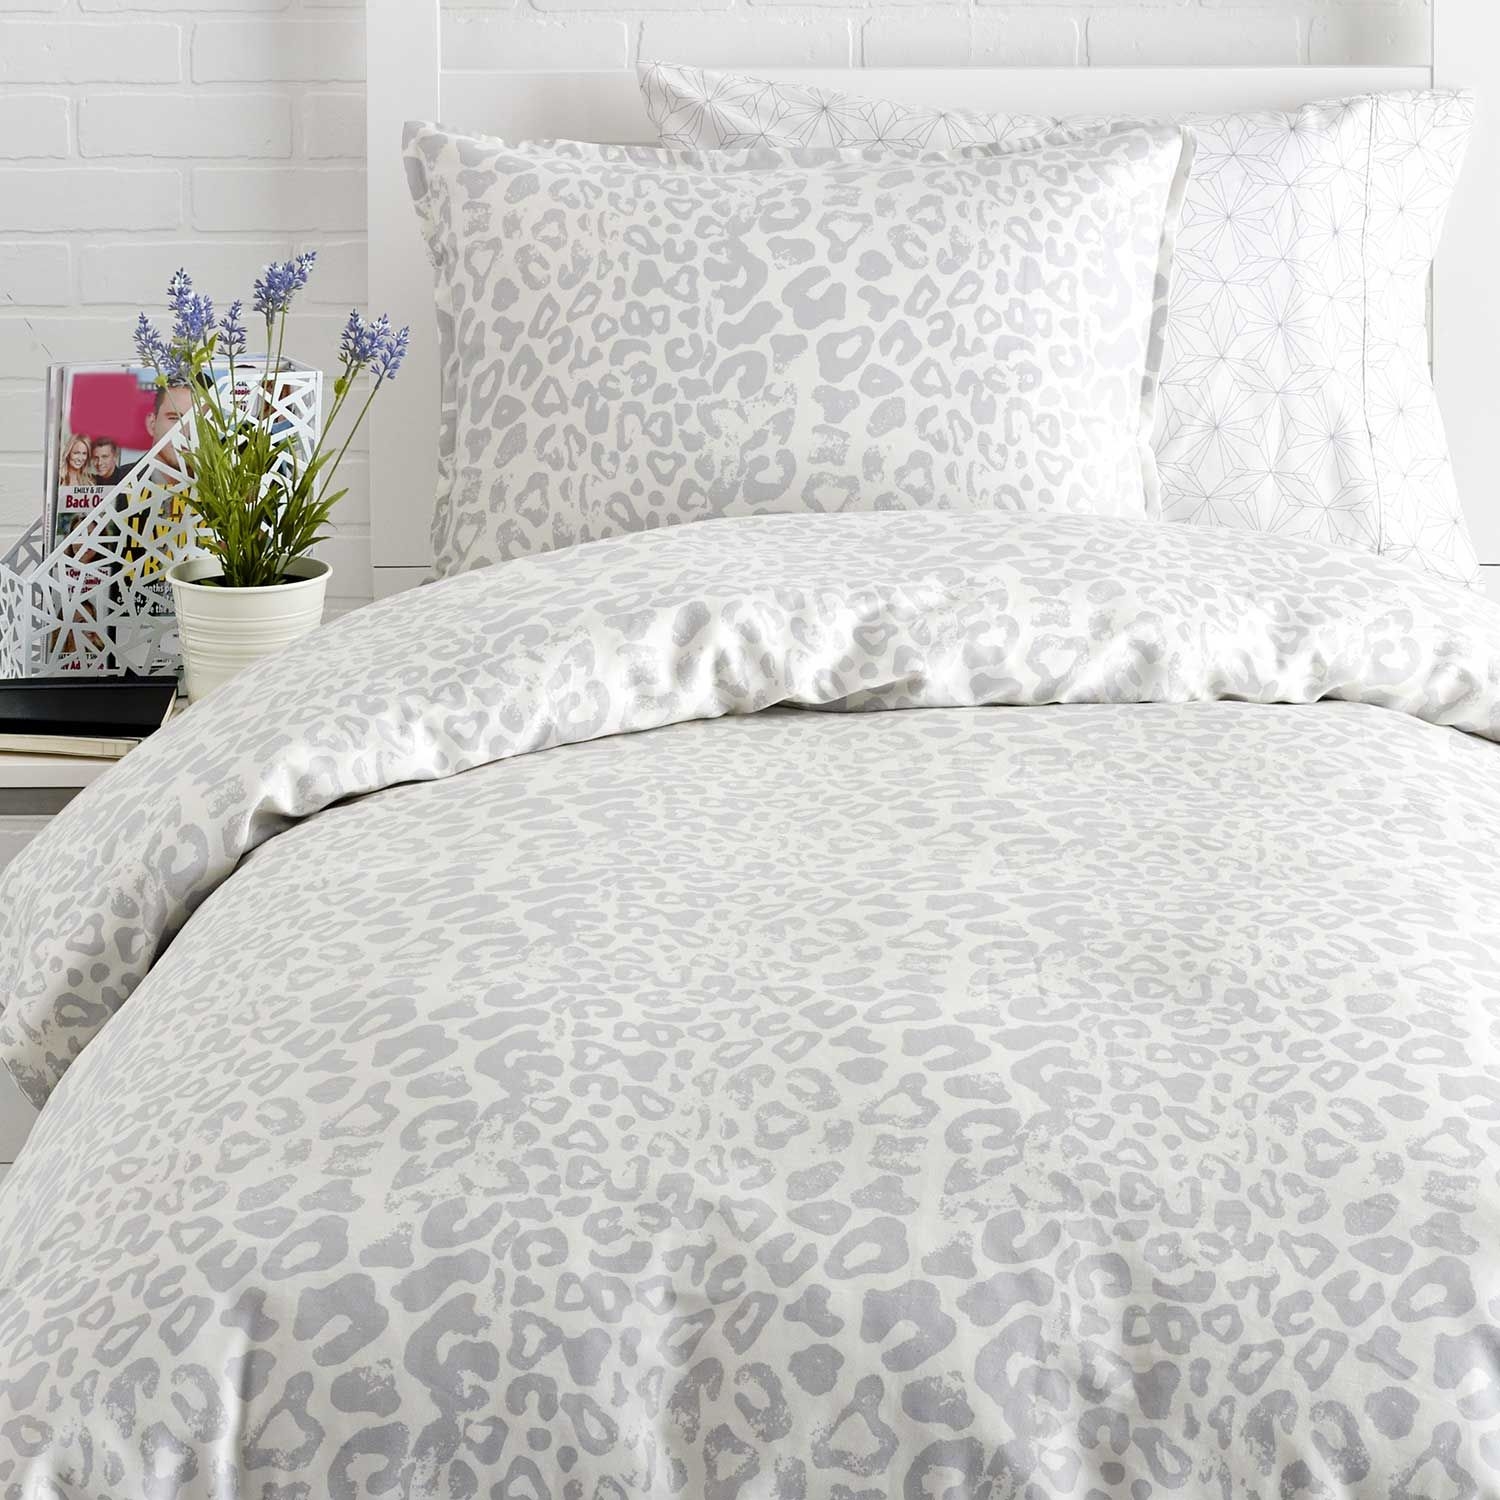 Leopard print comforter